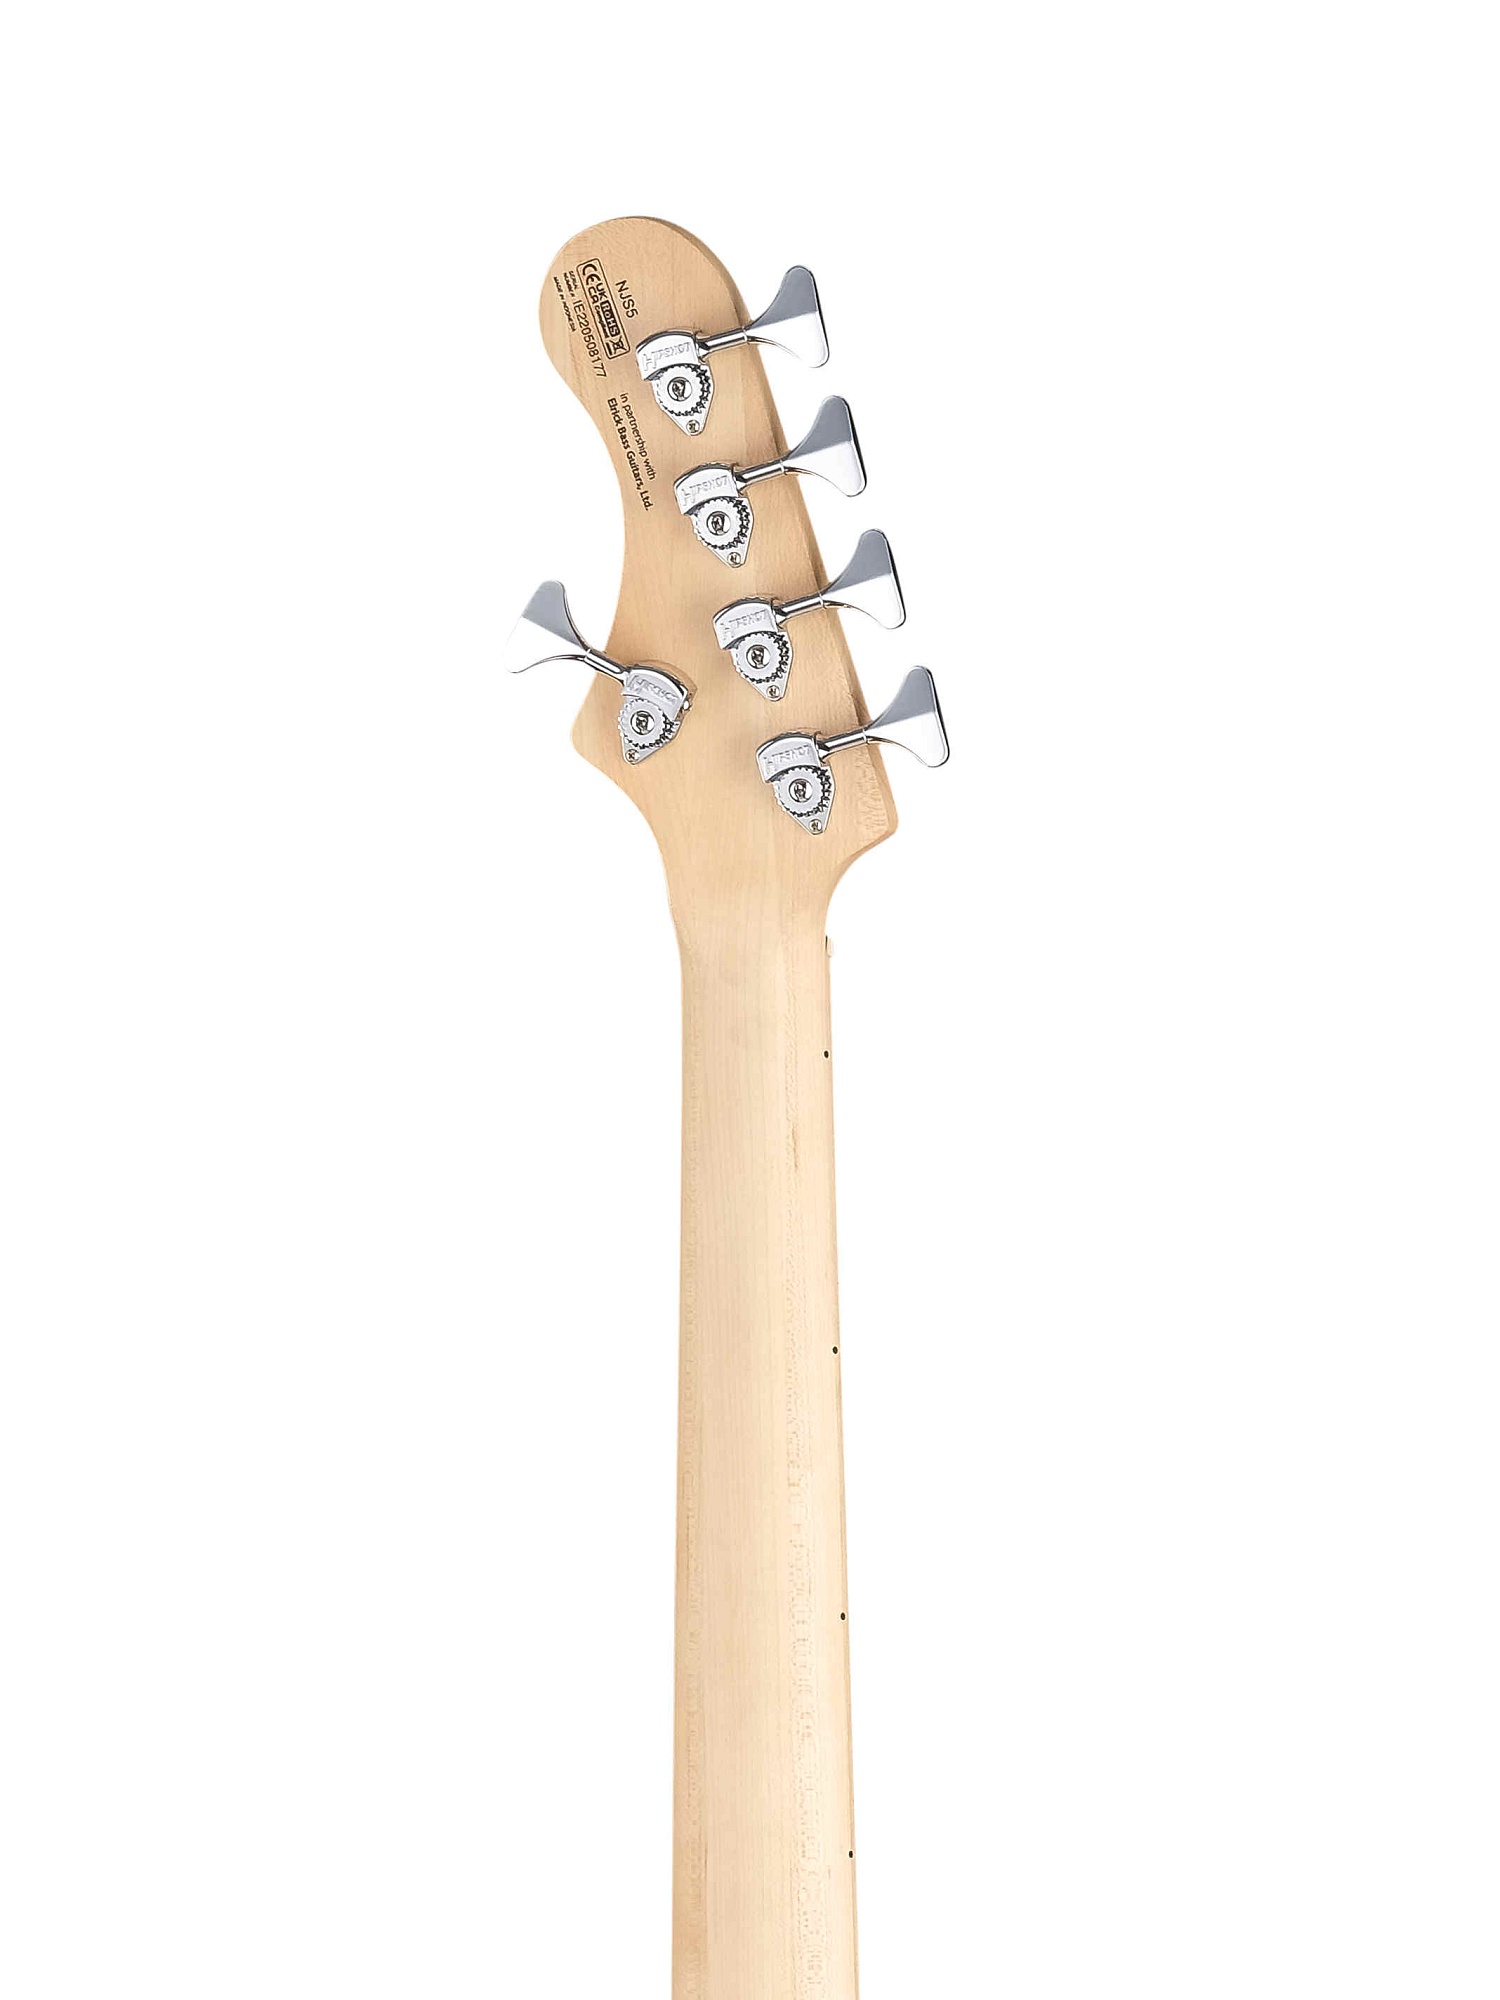 NJS5-WHT Elrick NJS Series Бас-гитара 5-струнная, белая, с чехлом, Cort купить в prostore.me